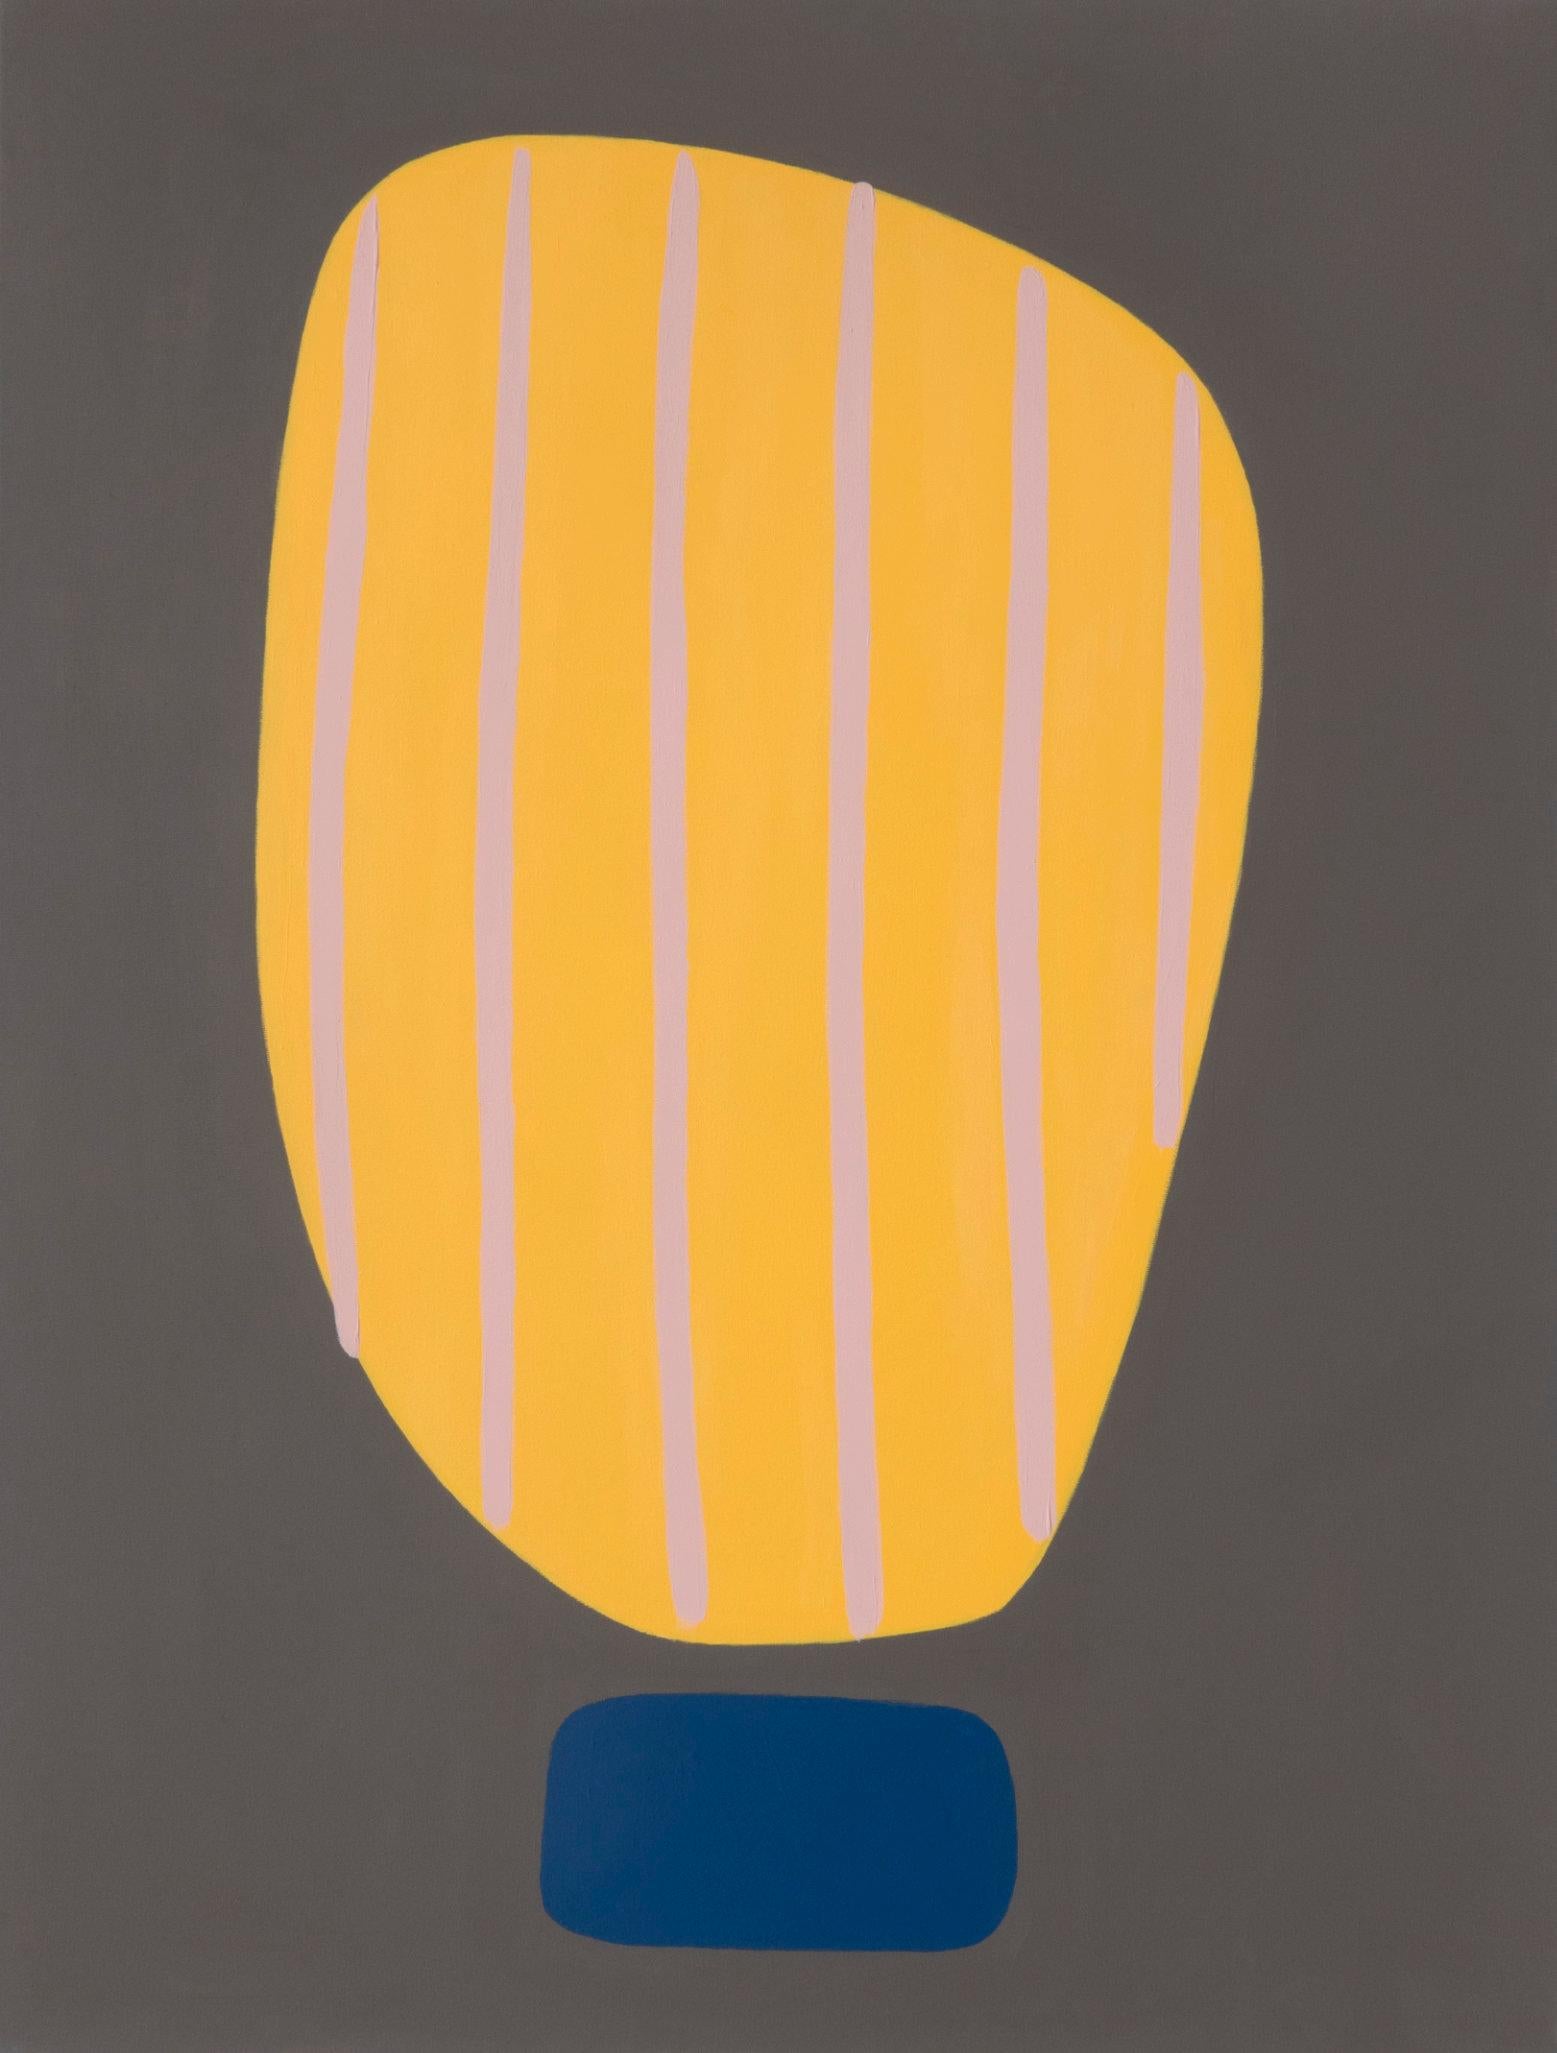 Peinture acrylique abstraite « Beaming IV », jaune foncé sur gris audacieux, courbes à rayures